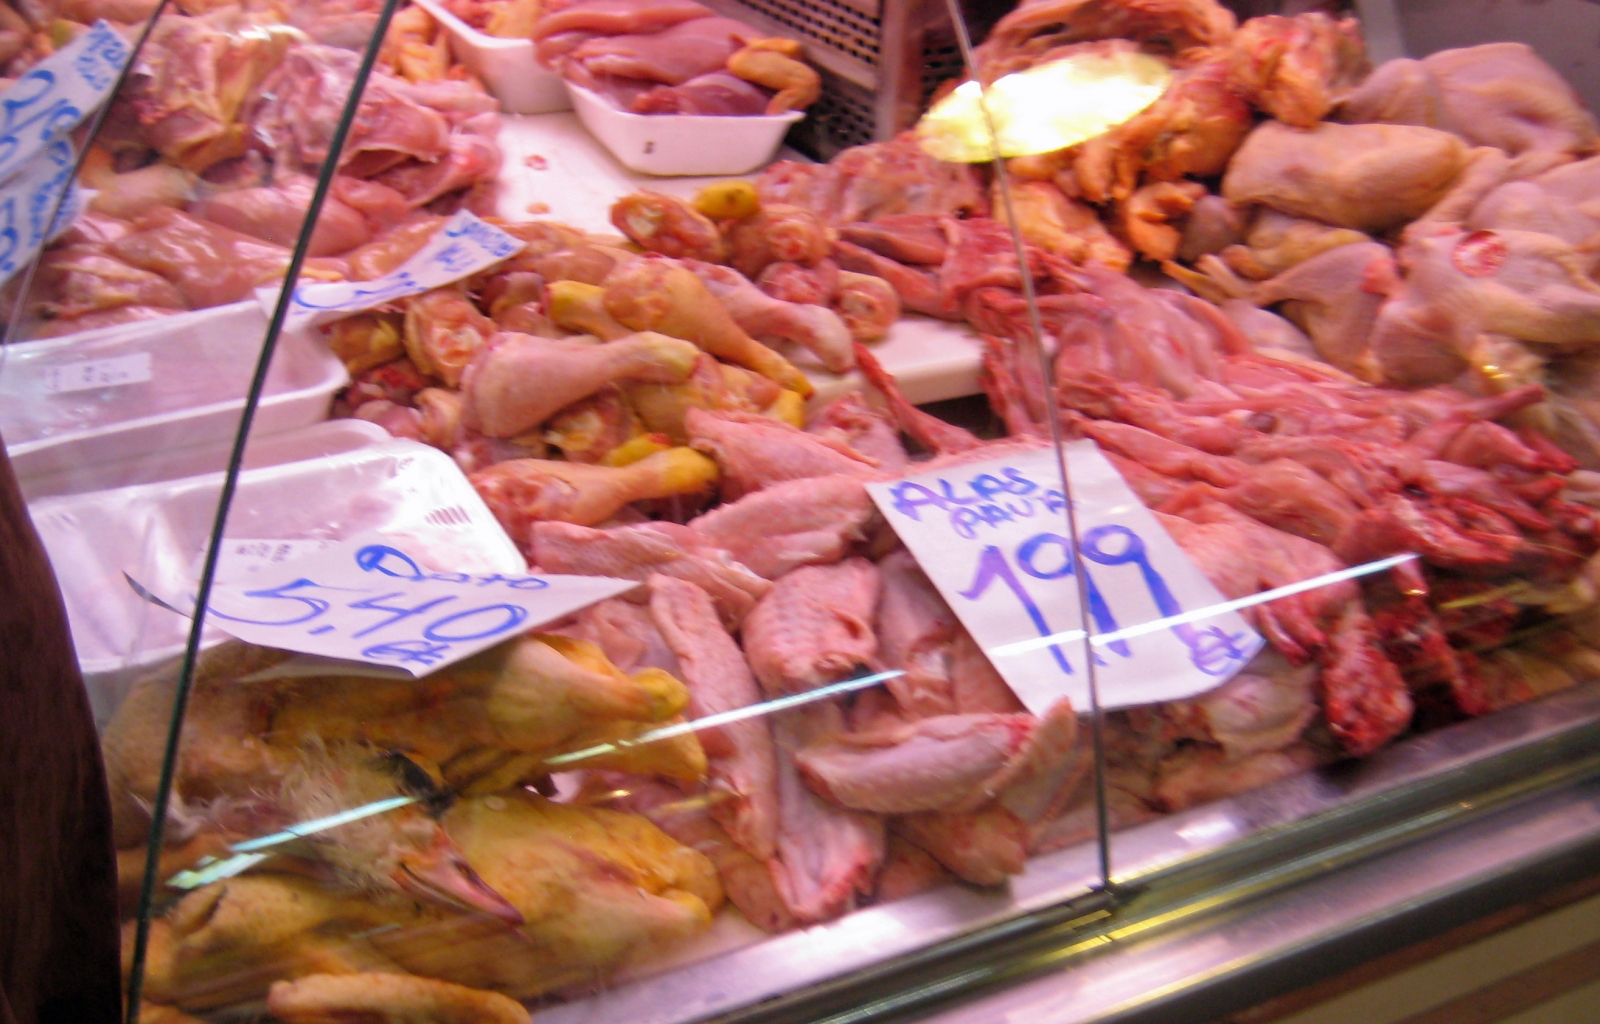 Poultry shop, Farmer's Market, Barcelona, Spain